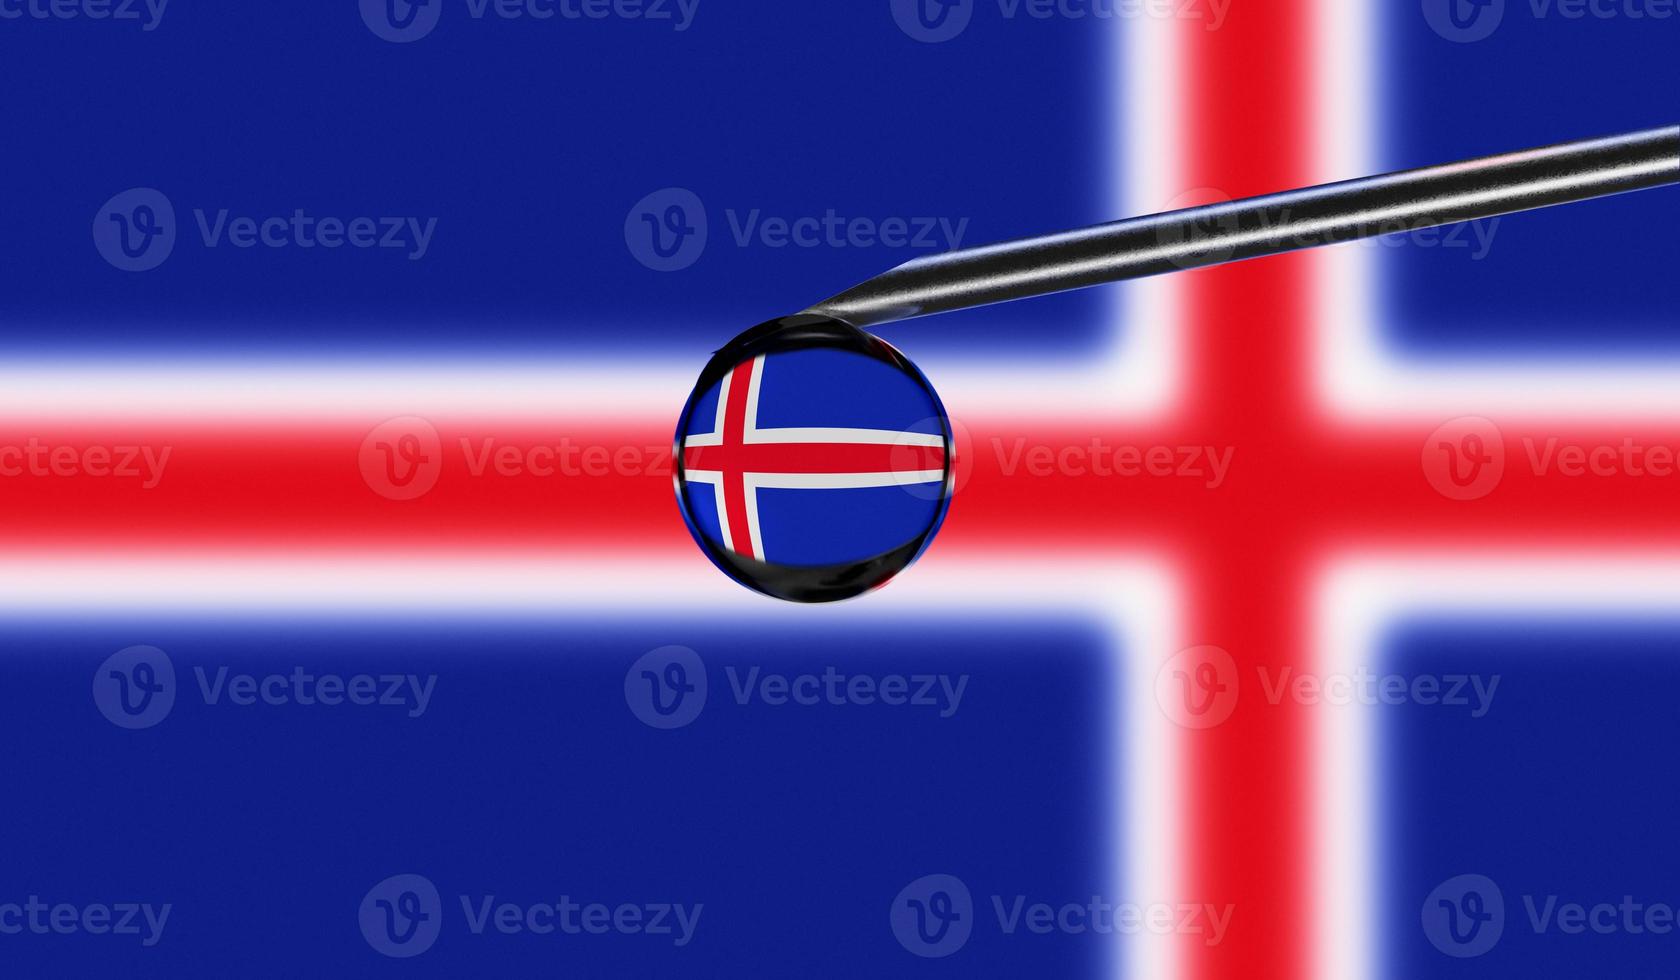 Impfspritze mit Tropfen auf der Nadel vor isländischer Nationalflagge. medizinisches Konzept Impfung. coronavirus sars-cov-2 pandemieschutz. Nationale Sicherheitsidee. foto